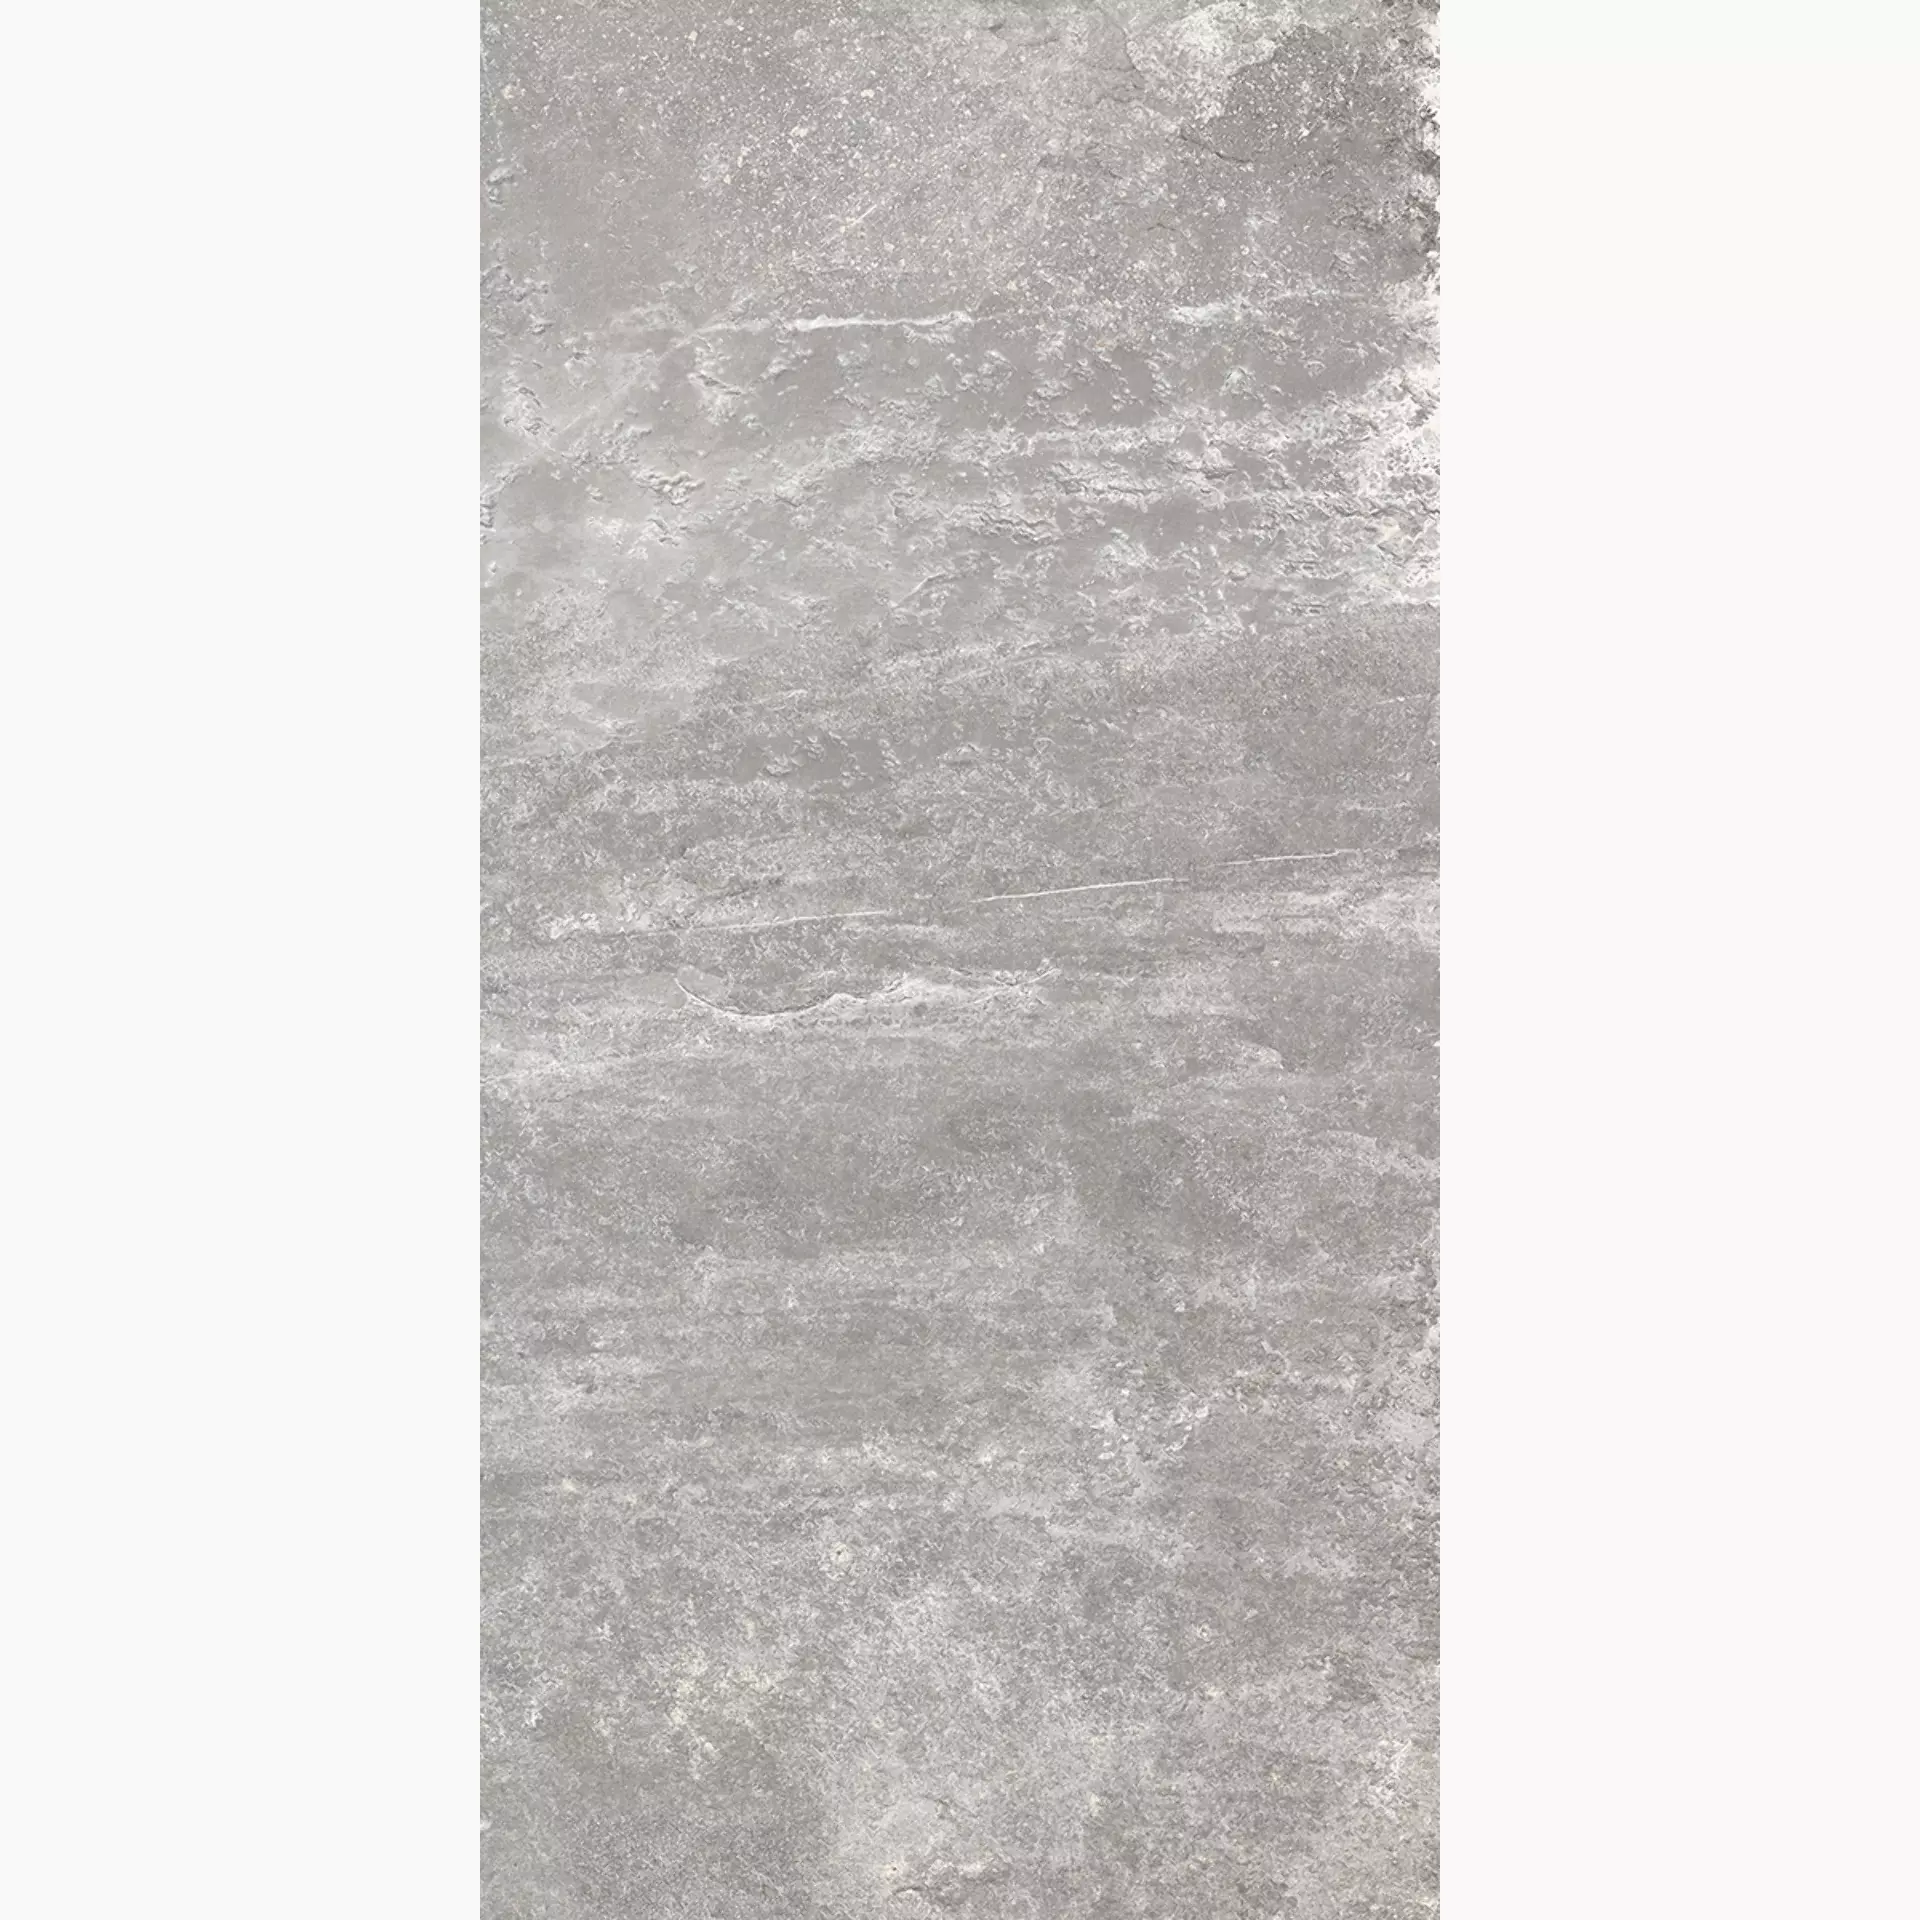 Rondine Ardesie Grey Naturale J86996 30,5x60,5cm 9,5mm